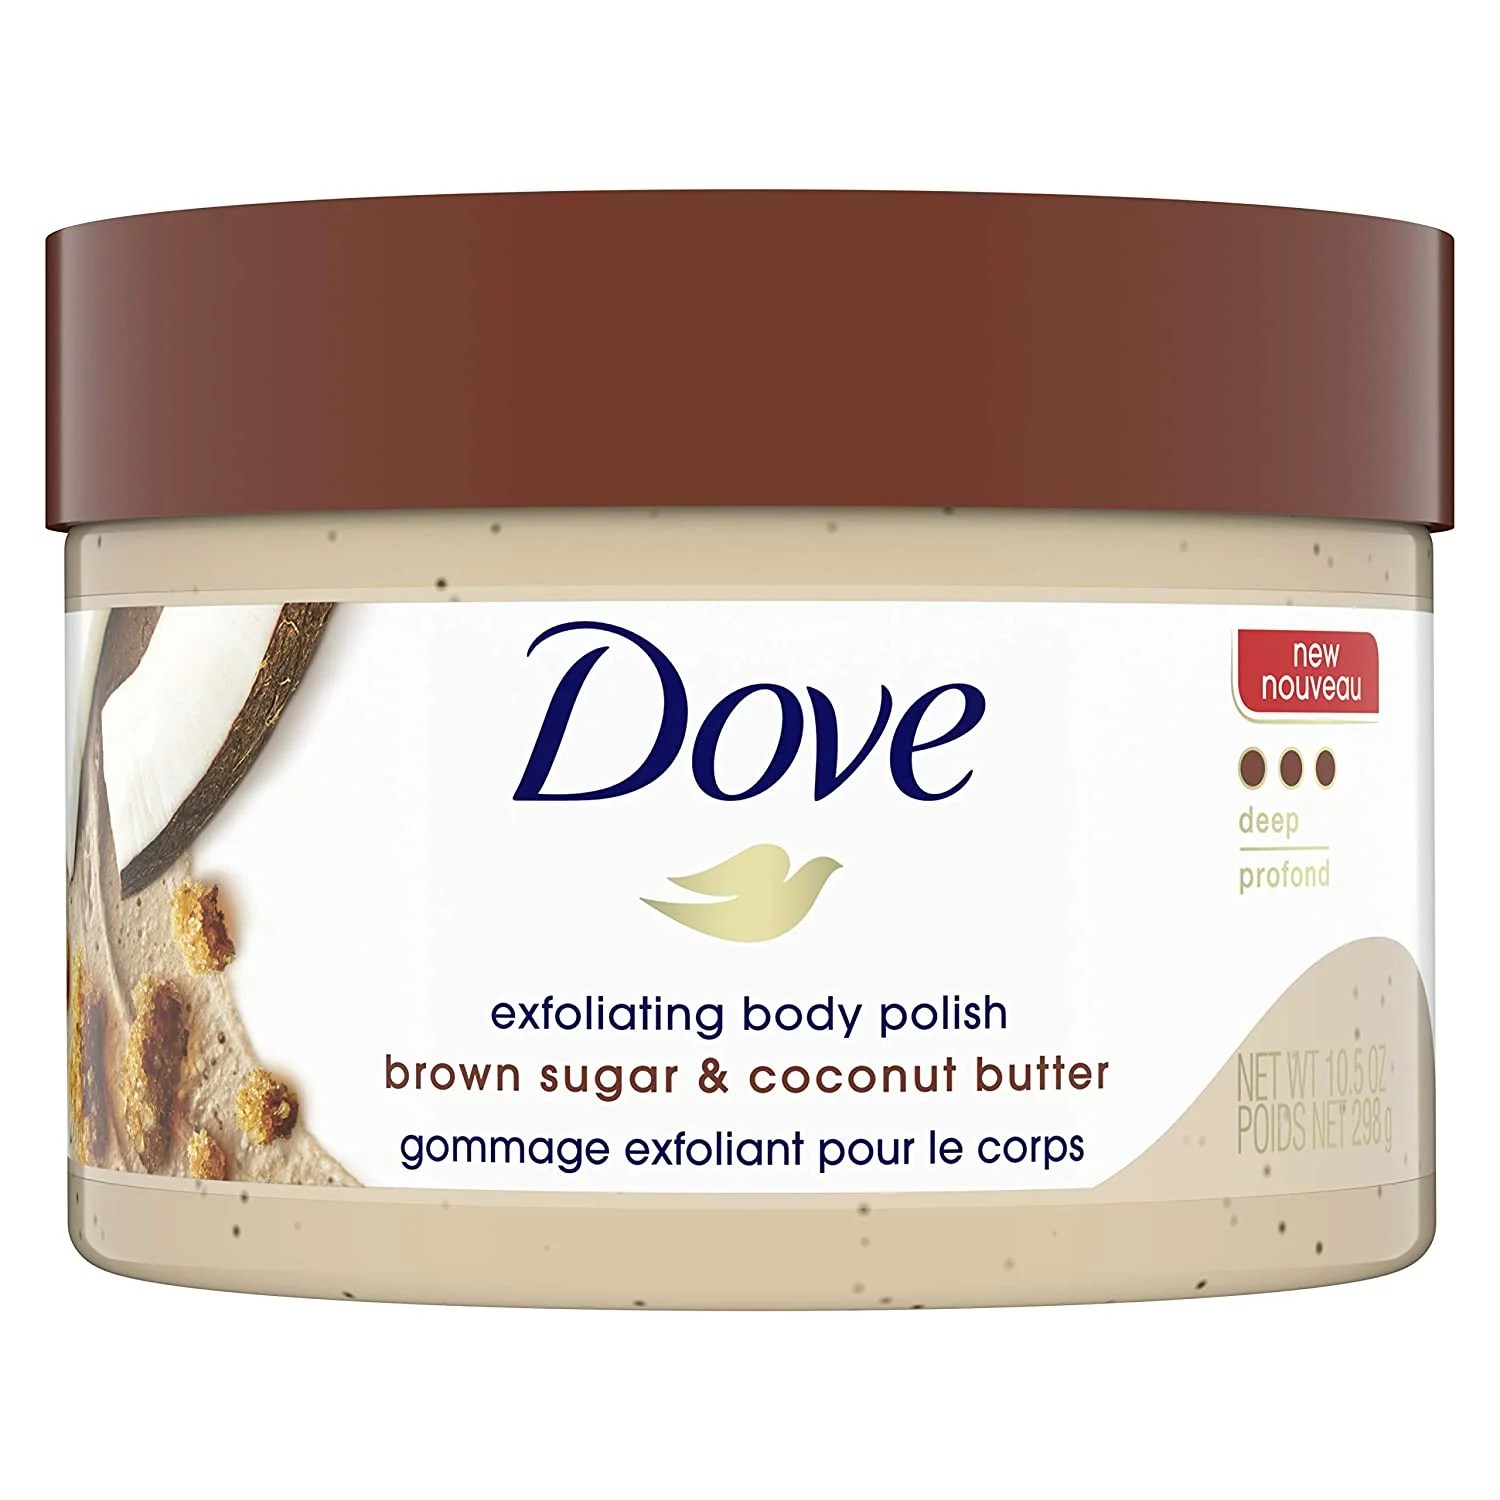 Dove Exfoliating Body Polish Brown Sugar & Coconut Butter